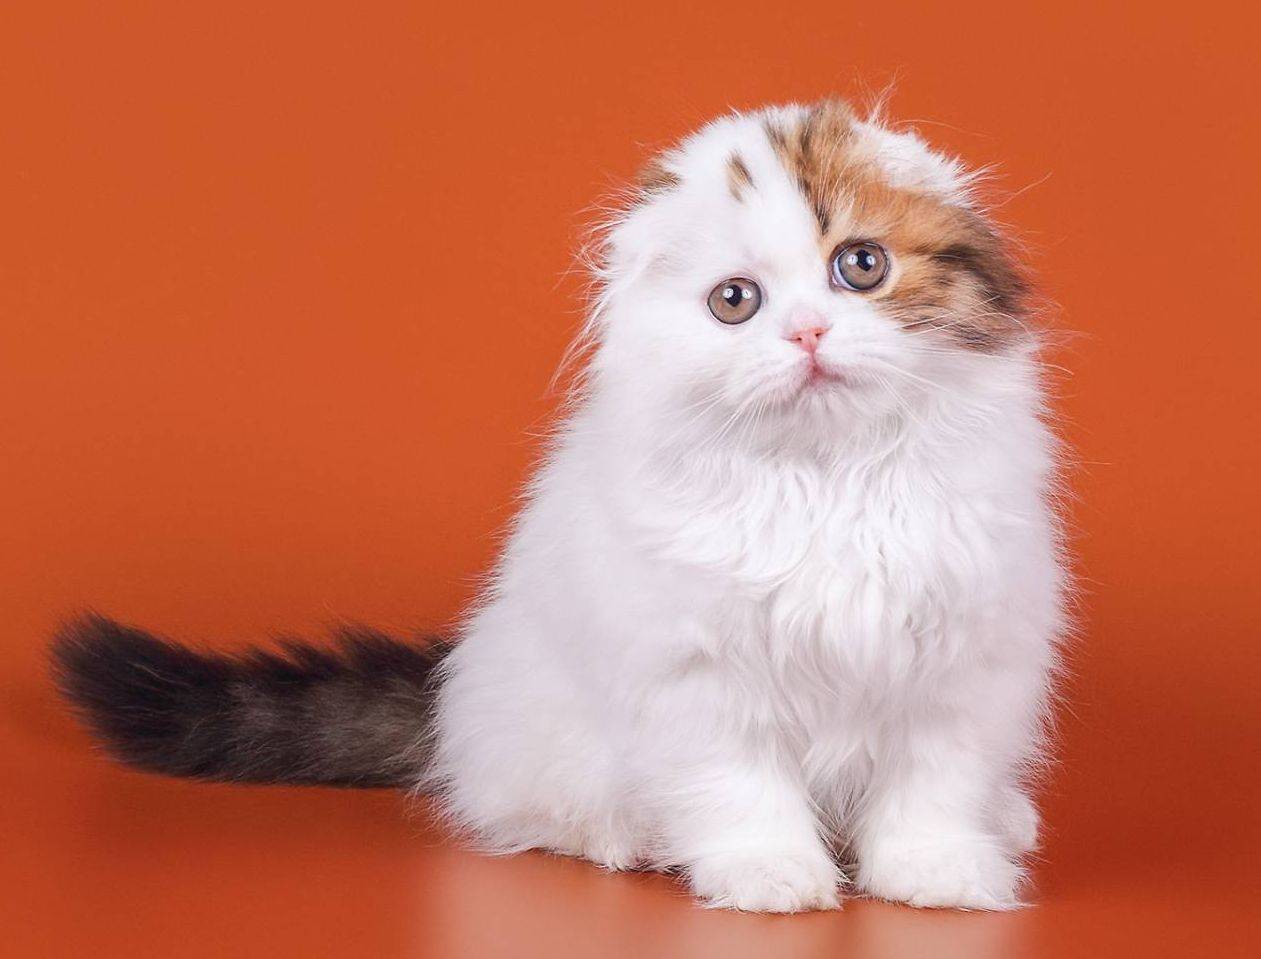 Кошка хайленд фолд: описание внешности и характера породы, уход за питомцем и его содержание, выбор котёнка, отзывы владельцев, фото кота